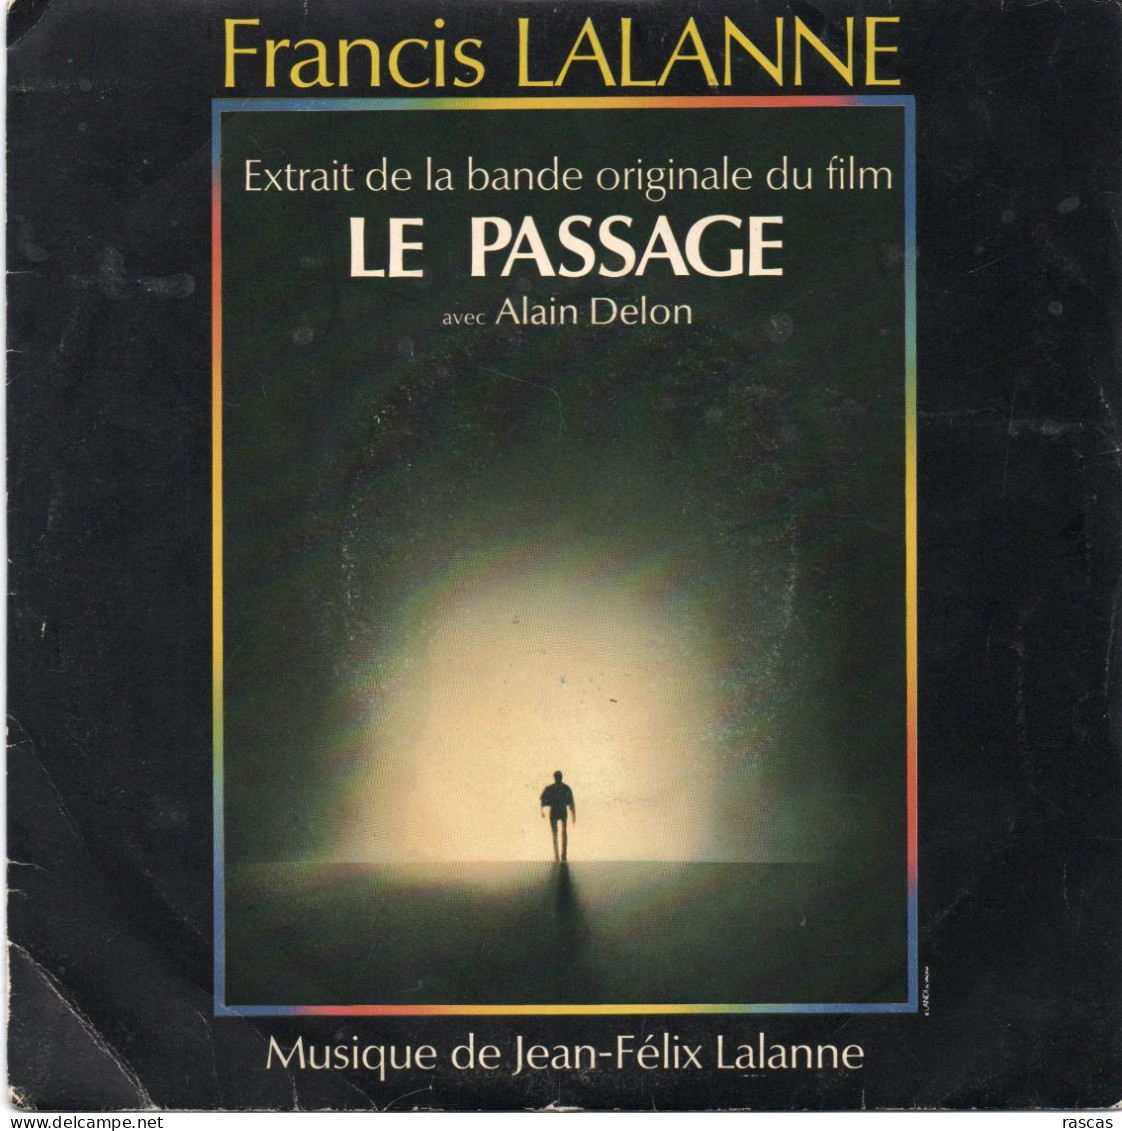 DISQUE VINYL 45 T DU CHANTEUR FRANCAIS FRANCIS LALANNE - LE PASSAGE - EXTRAIT DE LA BANDE ORIGINALE DU FILM - Filmmuziek